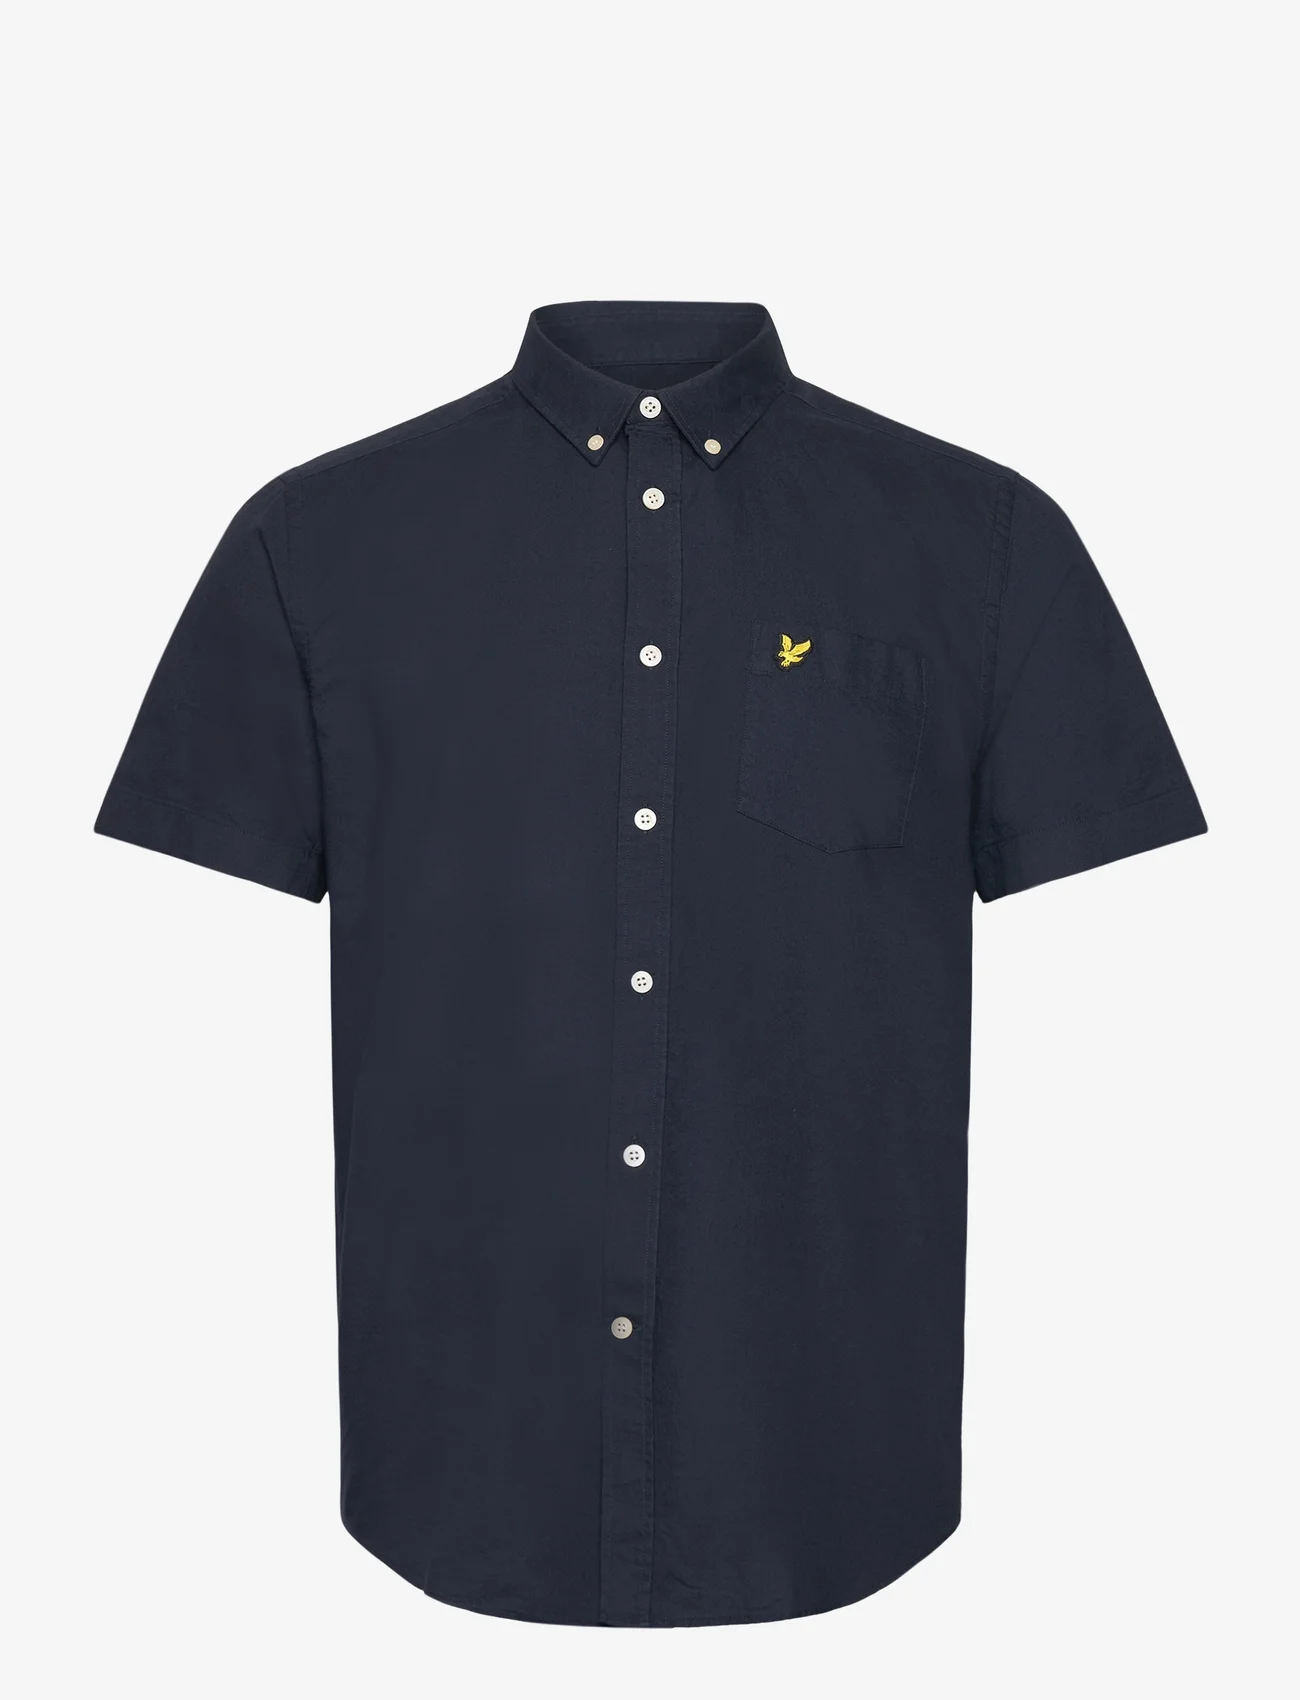 Lyle & Scott - Short Sleeve Oxford Shirt - oxford shirts - z271 dark navy - 0